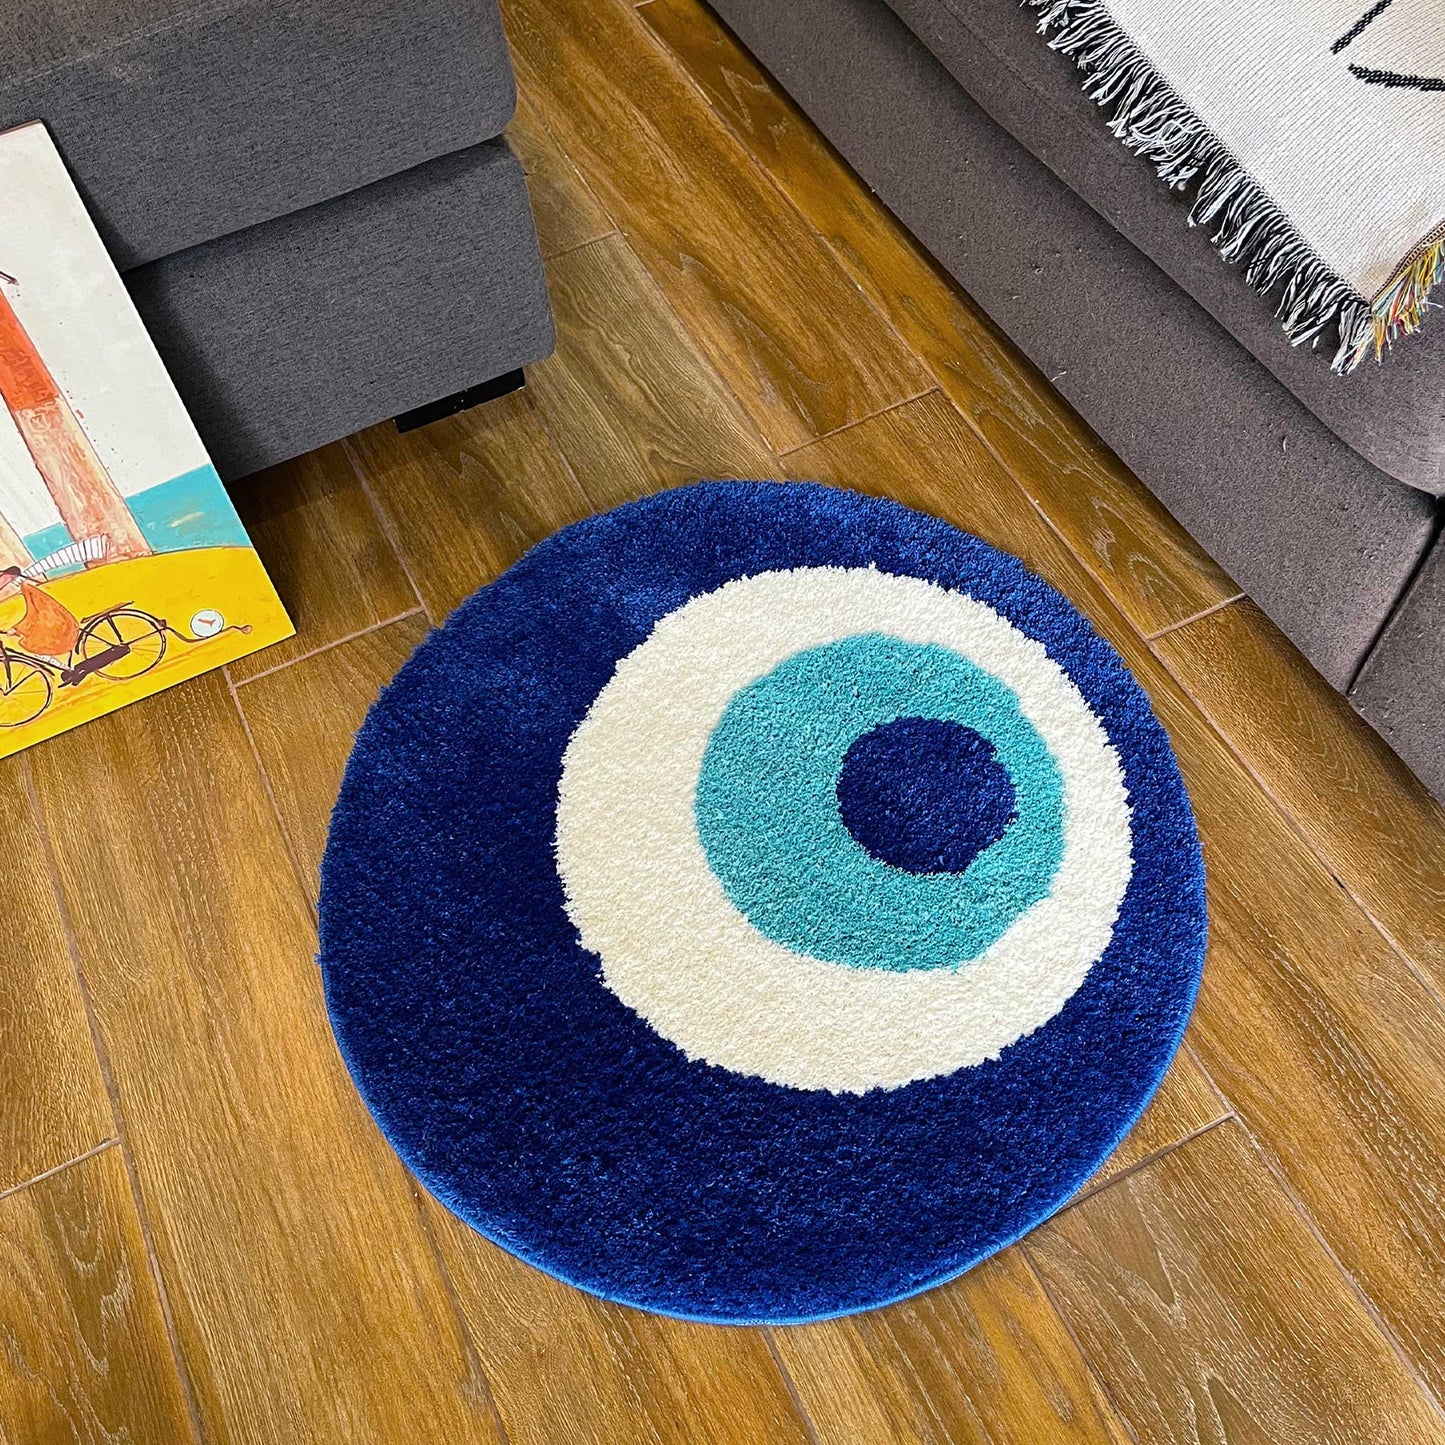 Tufted Rug Blue Evil Eye Rug in a Living Room